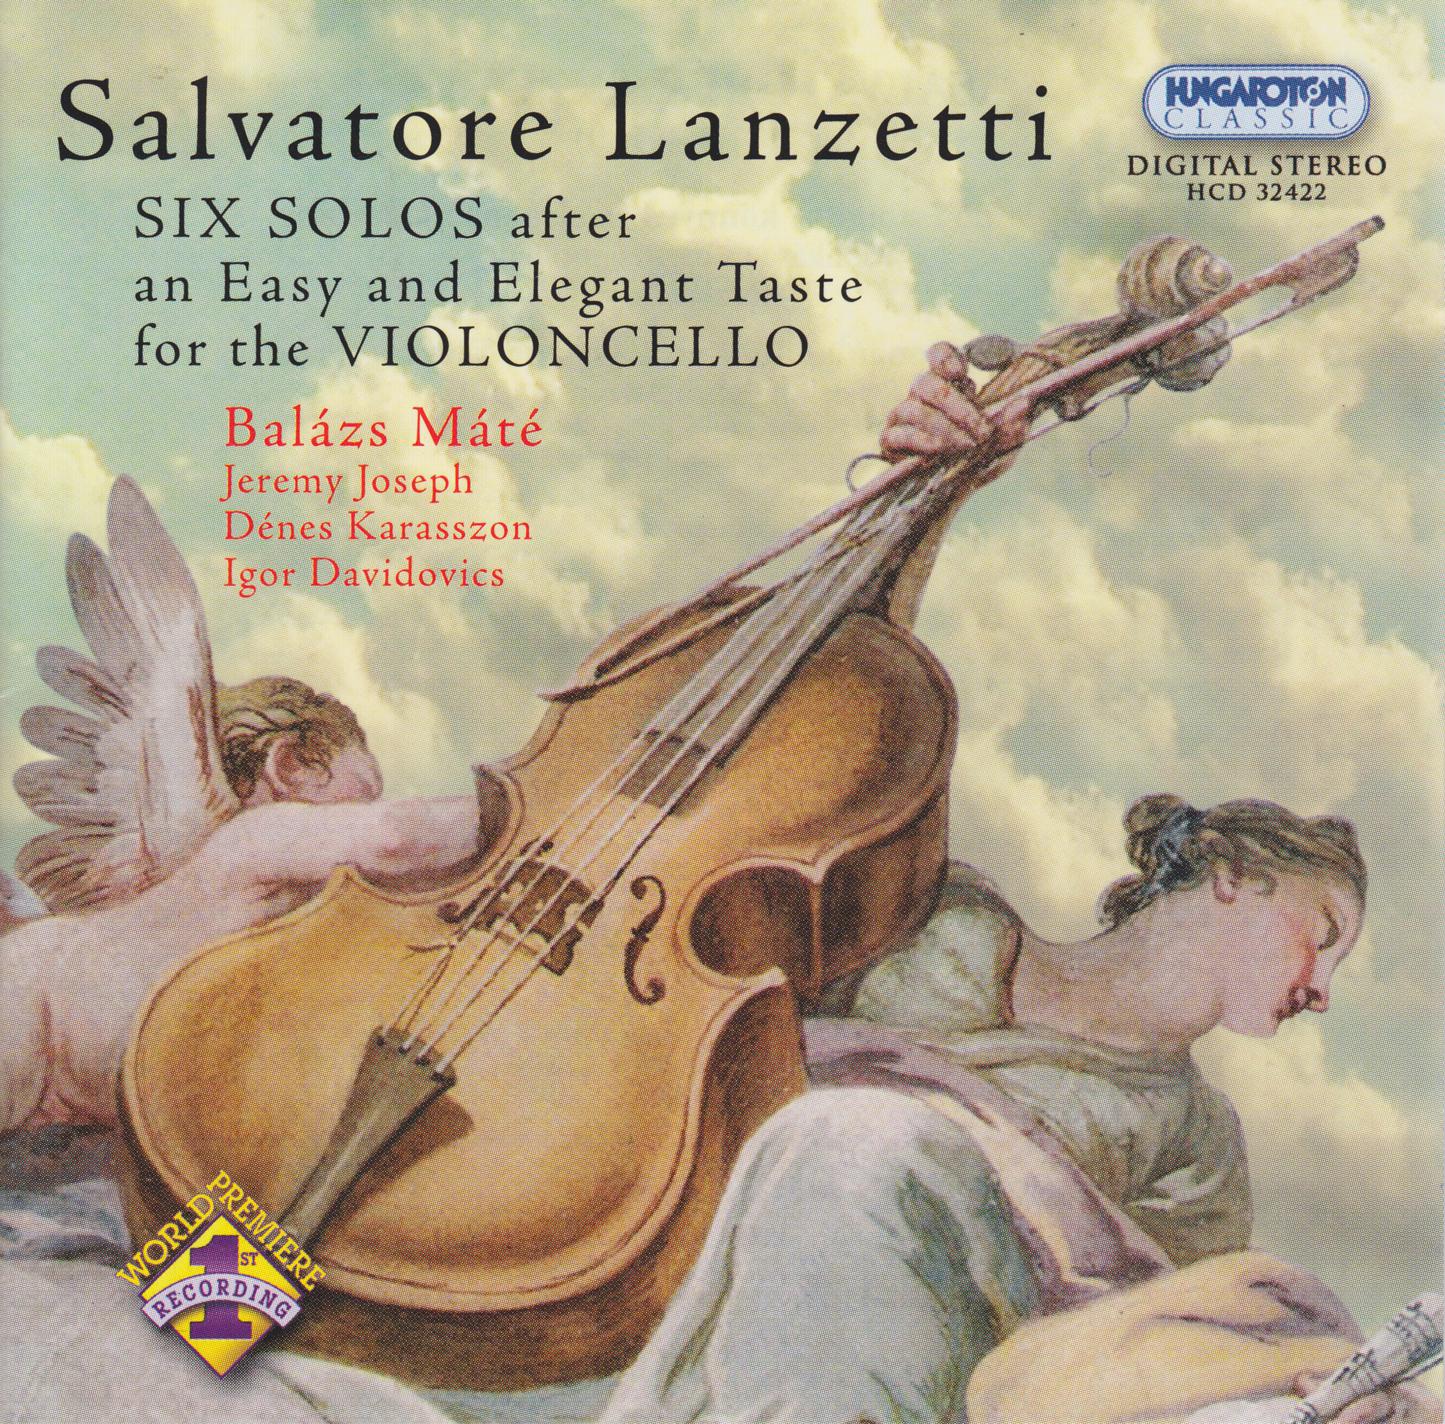 Balázs Máté - 6 Solos after an Easy and Elegant Taste, Cello Sonata No. 1 in G Major:III. Rondeau. Allegro